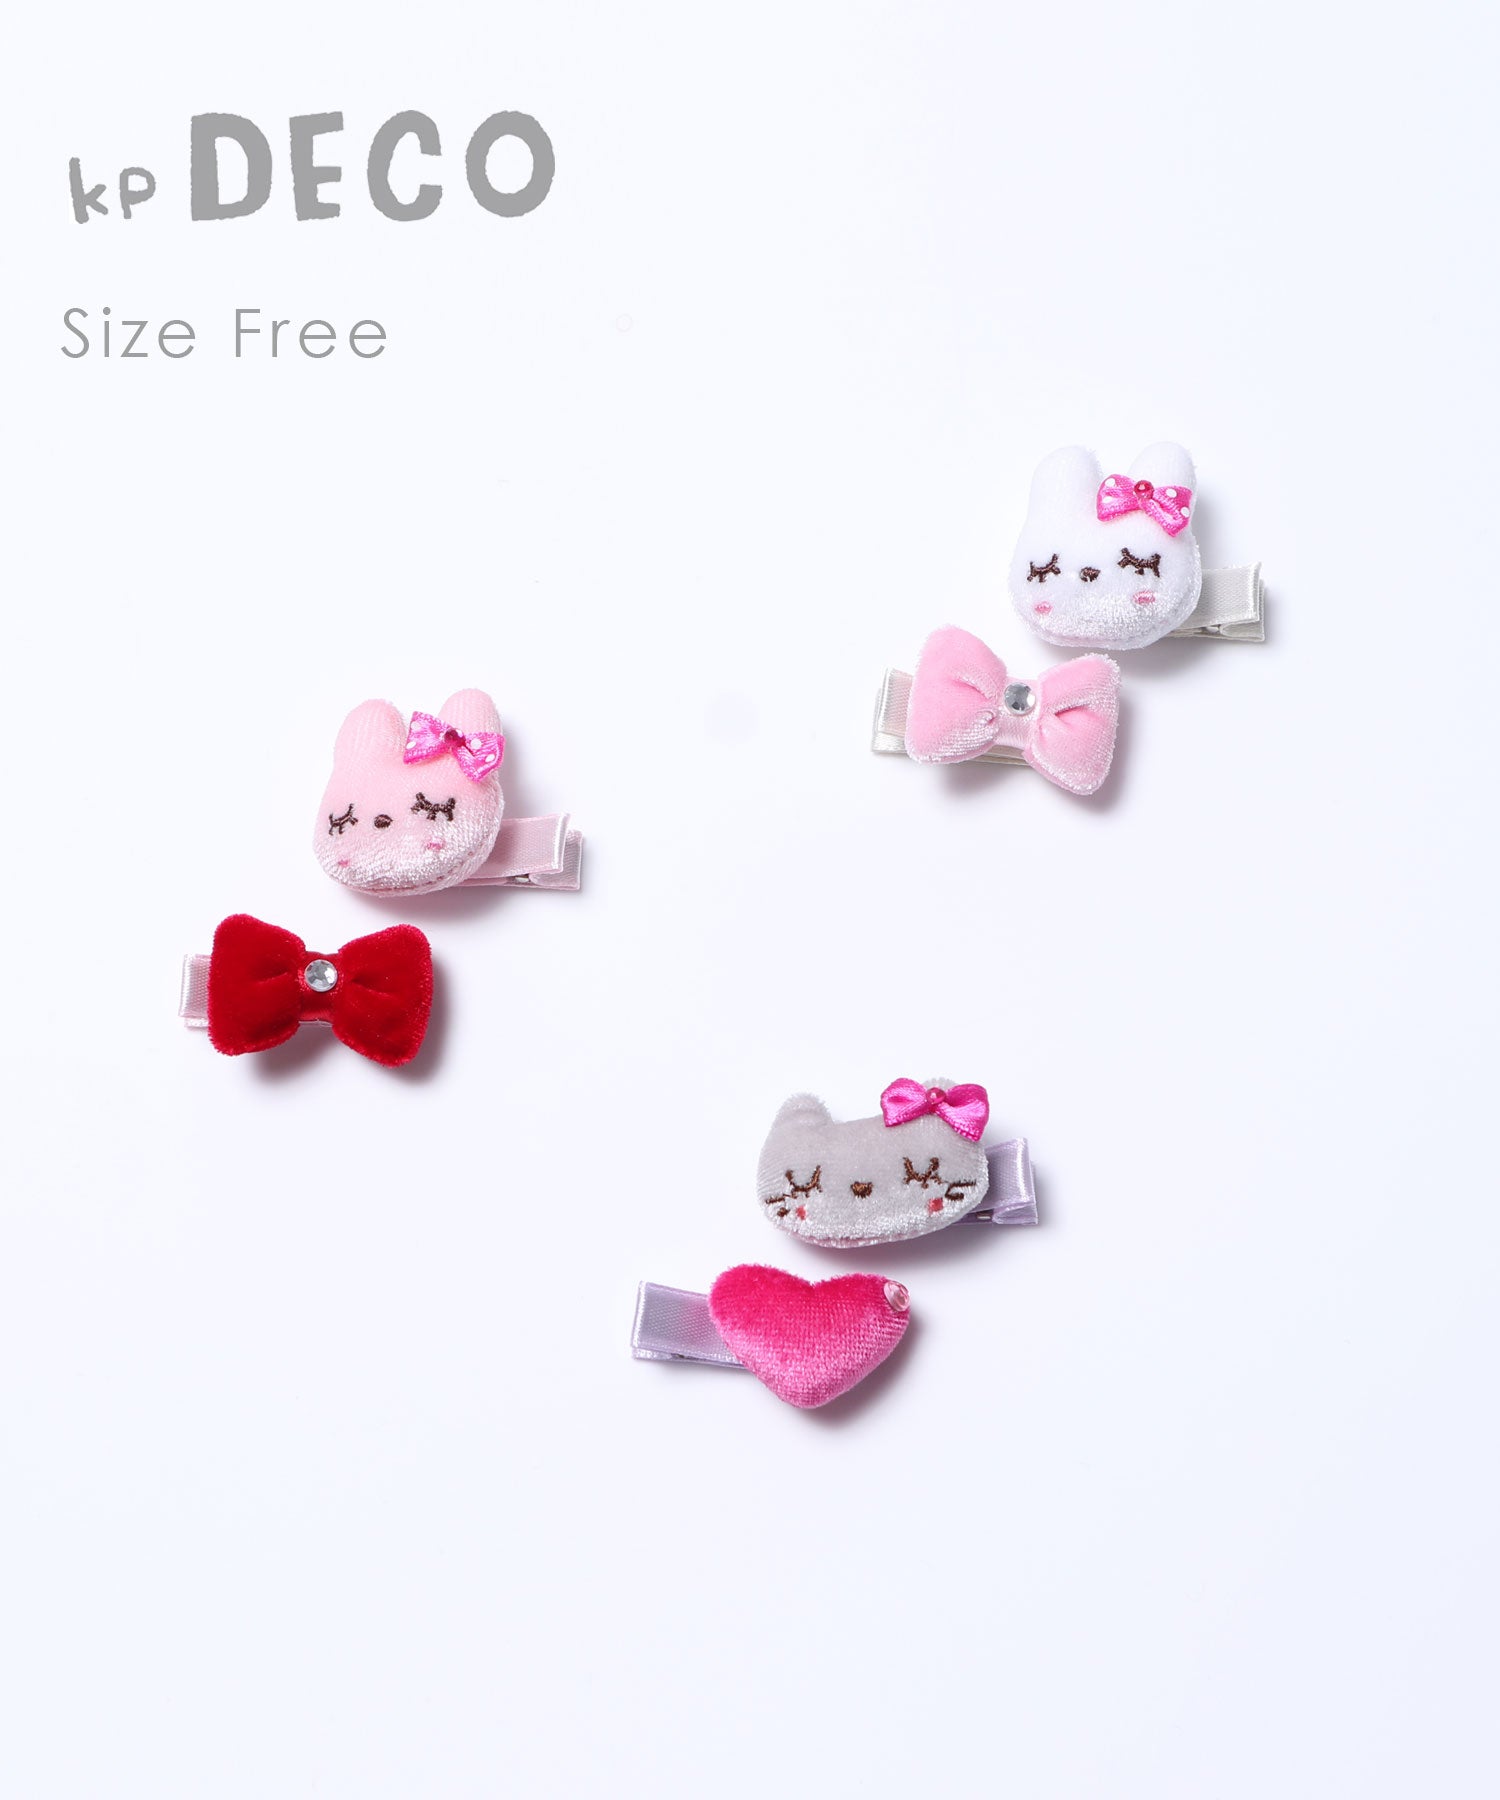 Kpdeco ケーピーデコ ミミちゃん ココちゃんとリボンモチーフのヘアクリップ2種2個セット Kp ケーピー Knit Planner 公式サイト